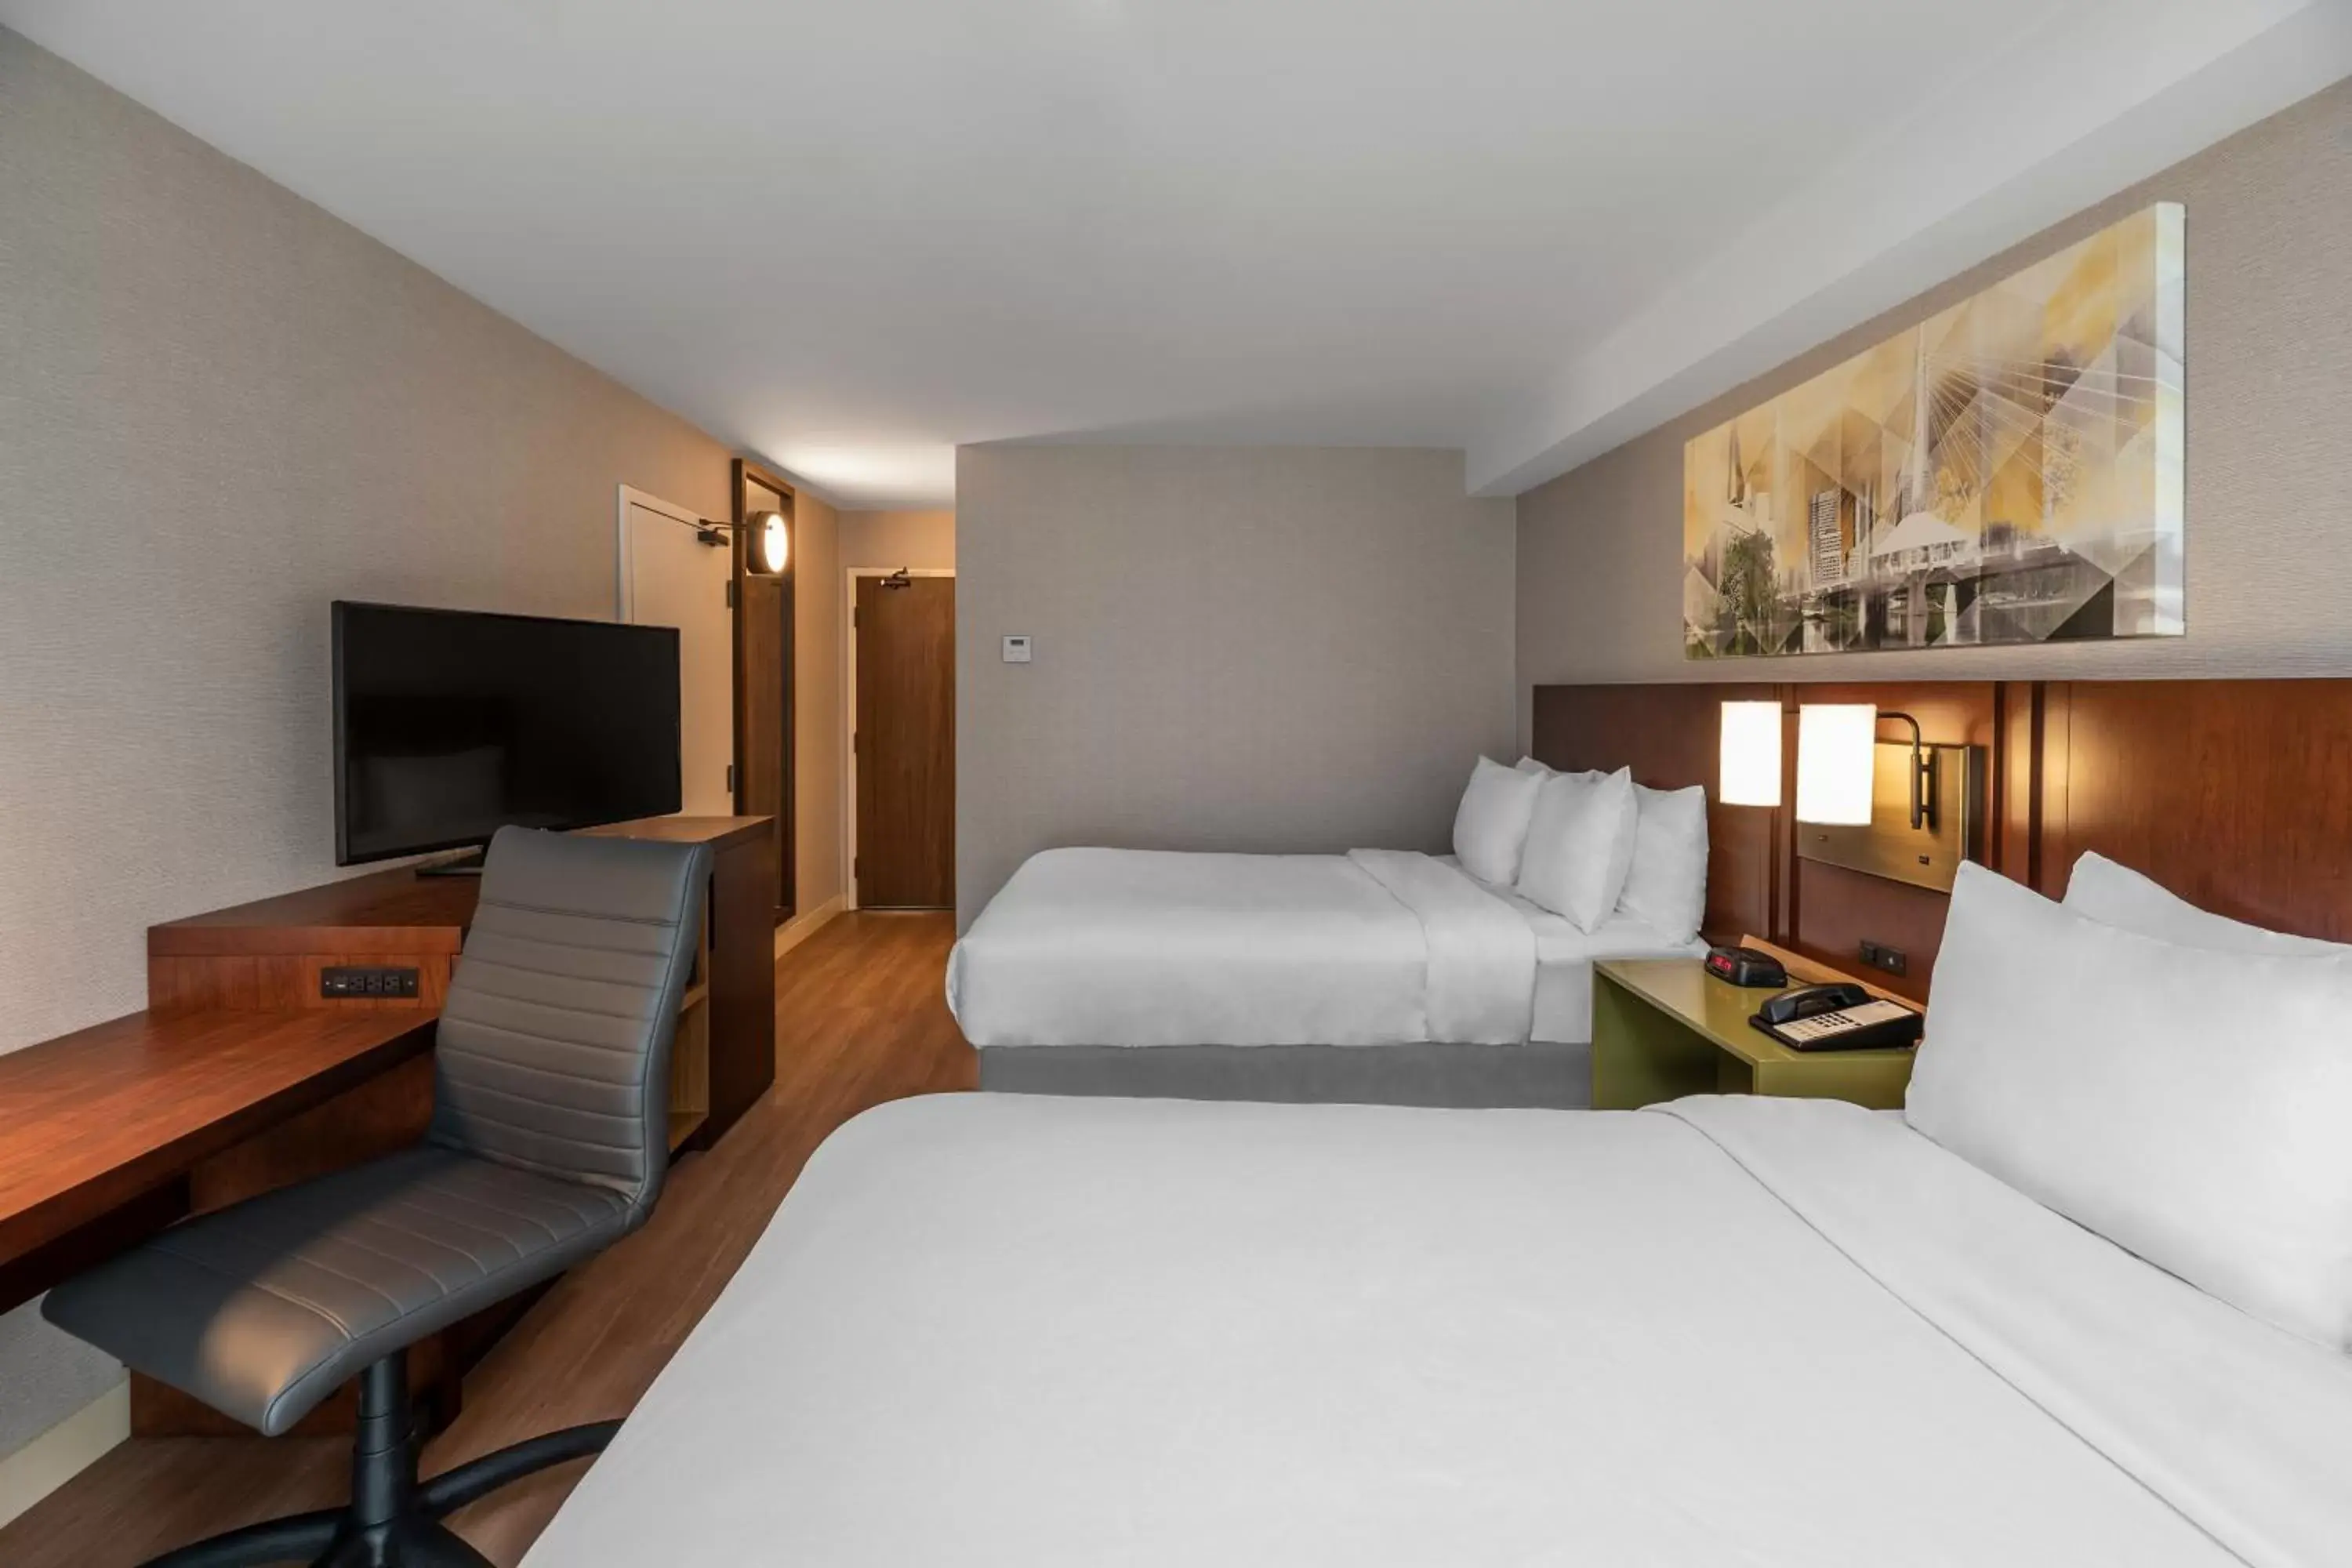 Bedroom, Bed in Comfort Inn Brossard